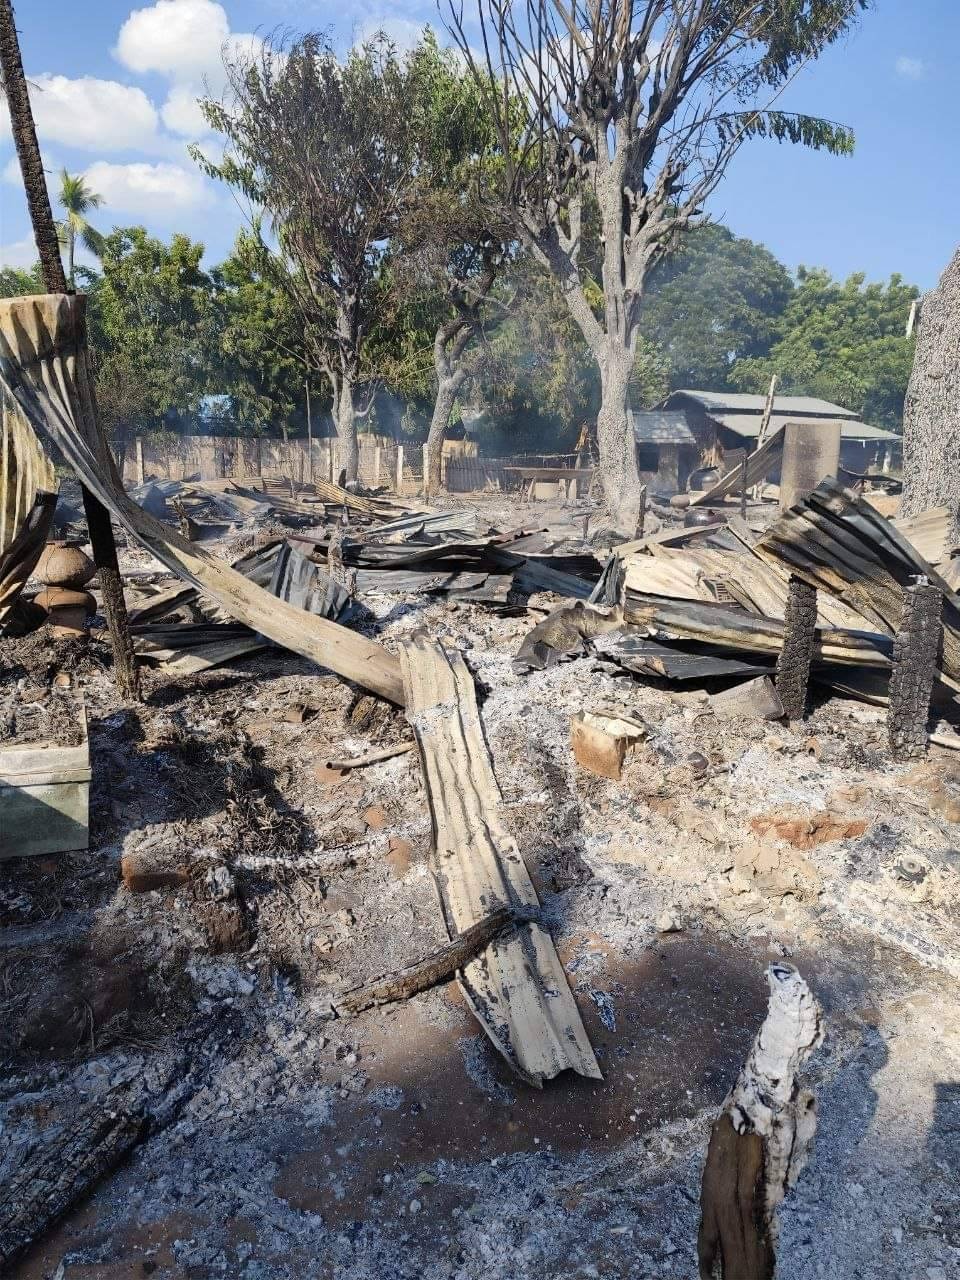 စစ်ကိုင်းနယ်က ရွာမရွာကို စစ်တပ်ကမီးရှို့လို့ အိမ် ၁၀ လုံး မီးလောင်ပျက်စီး